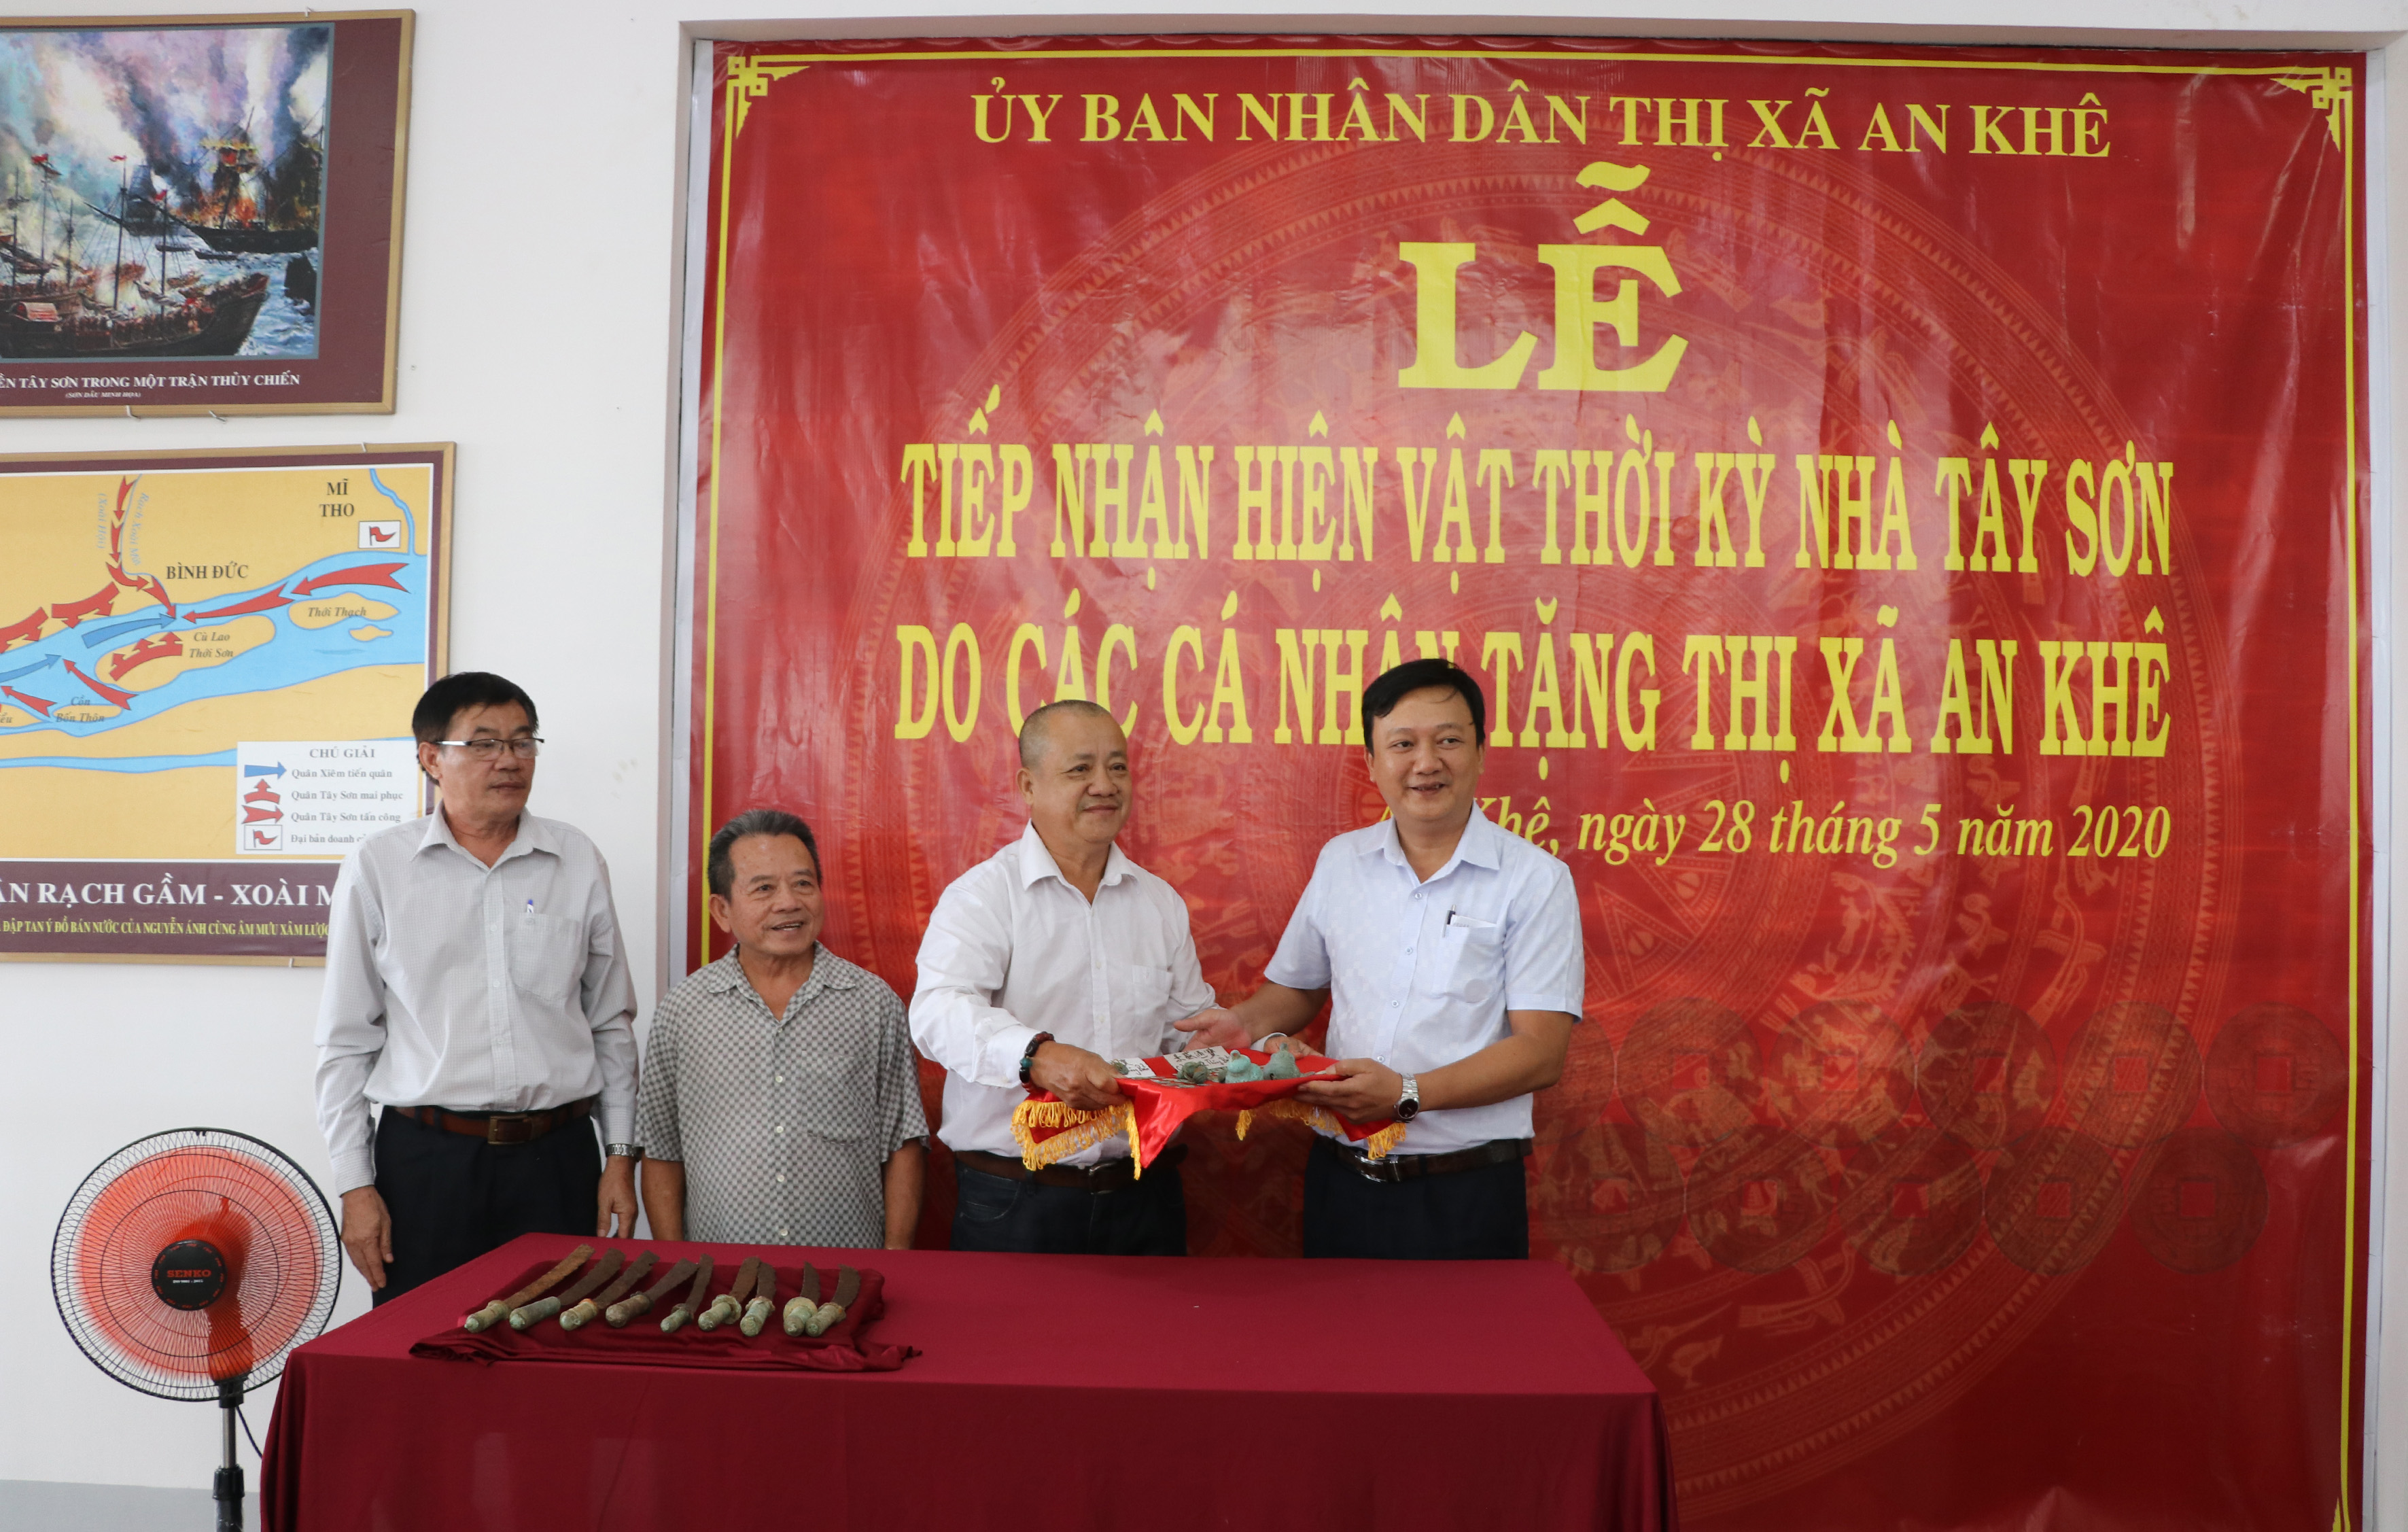 Ông Lâm Dũ Xênh (thứ 3 bên trái; huyện Bình Sơn, tỉnh Quảng Ngãi) trao tặng 99 đồng tiền và 8 cái lục lạc đồng thời kỳ nhà Tây Sơn cho thị xã An Khê. Ảnh: Ngọc Minh